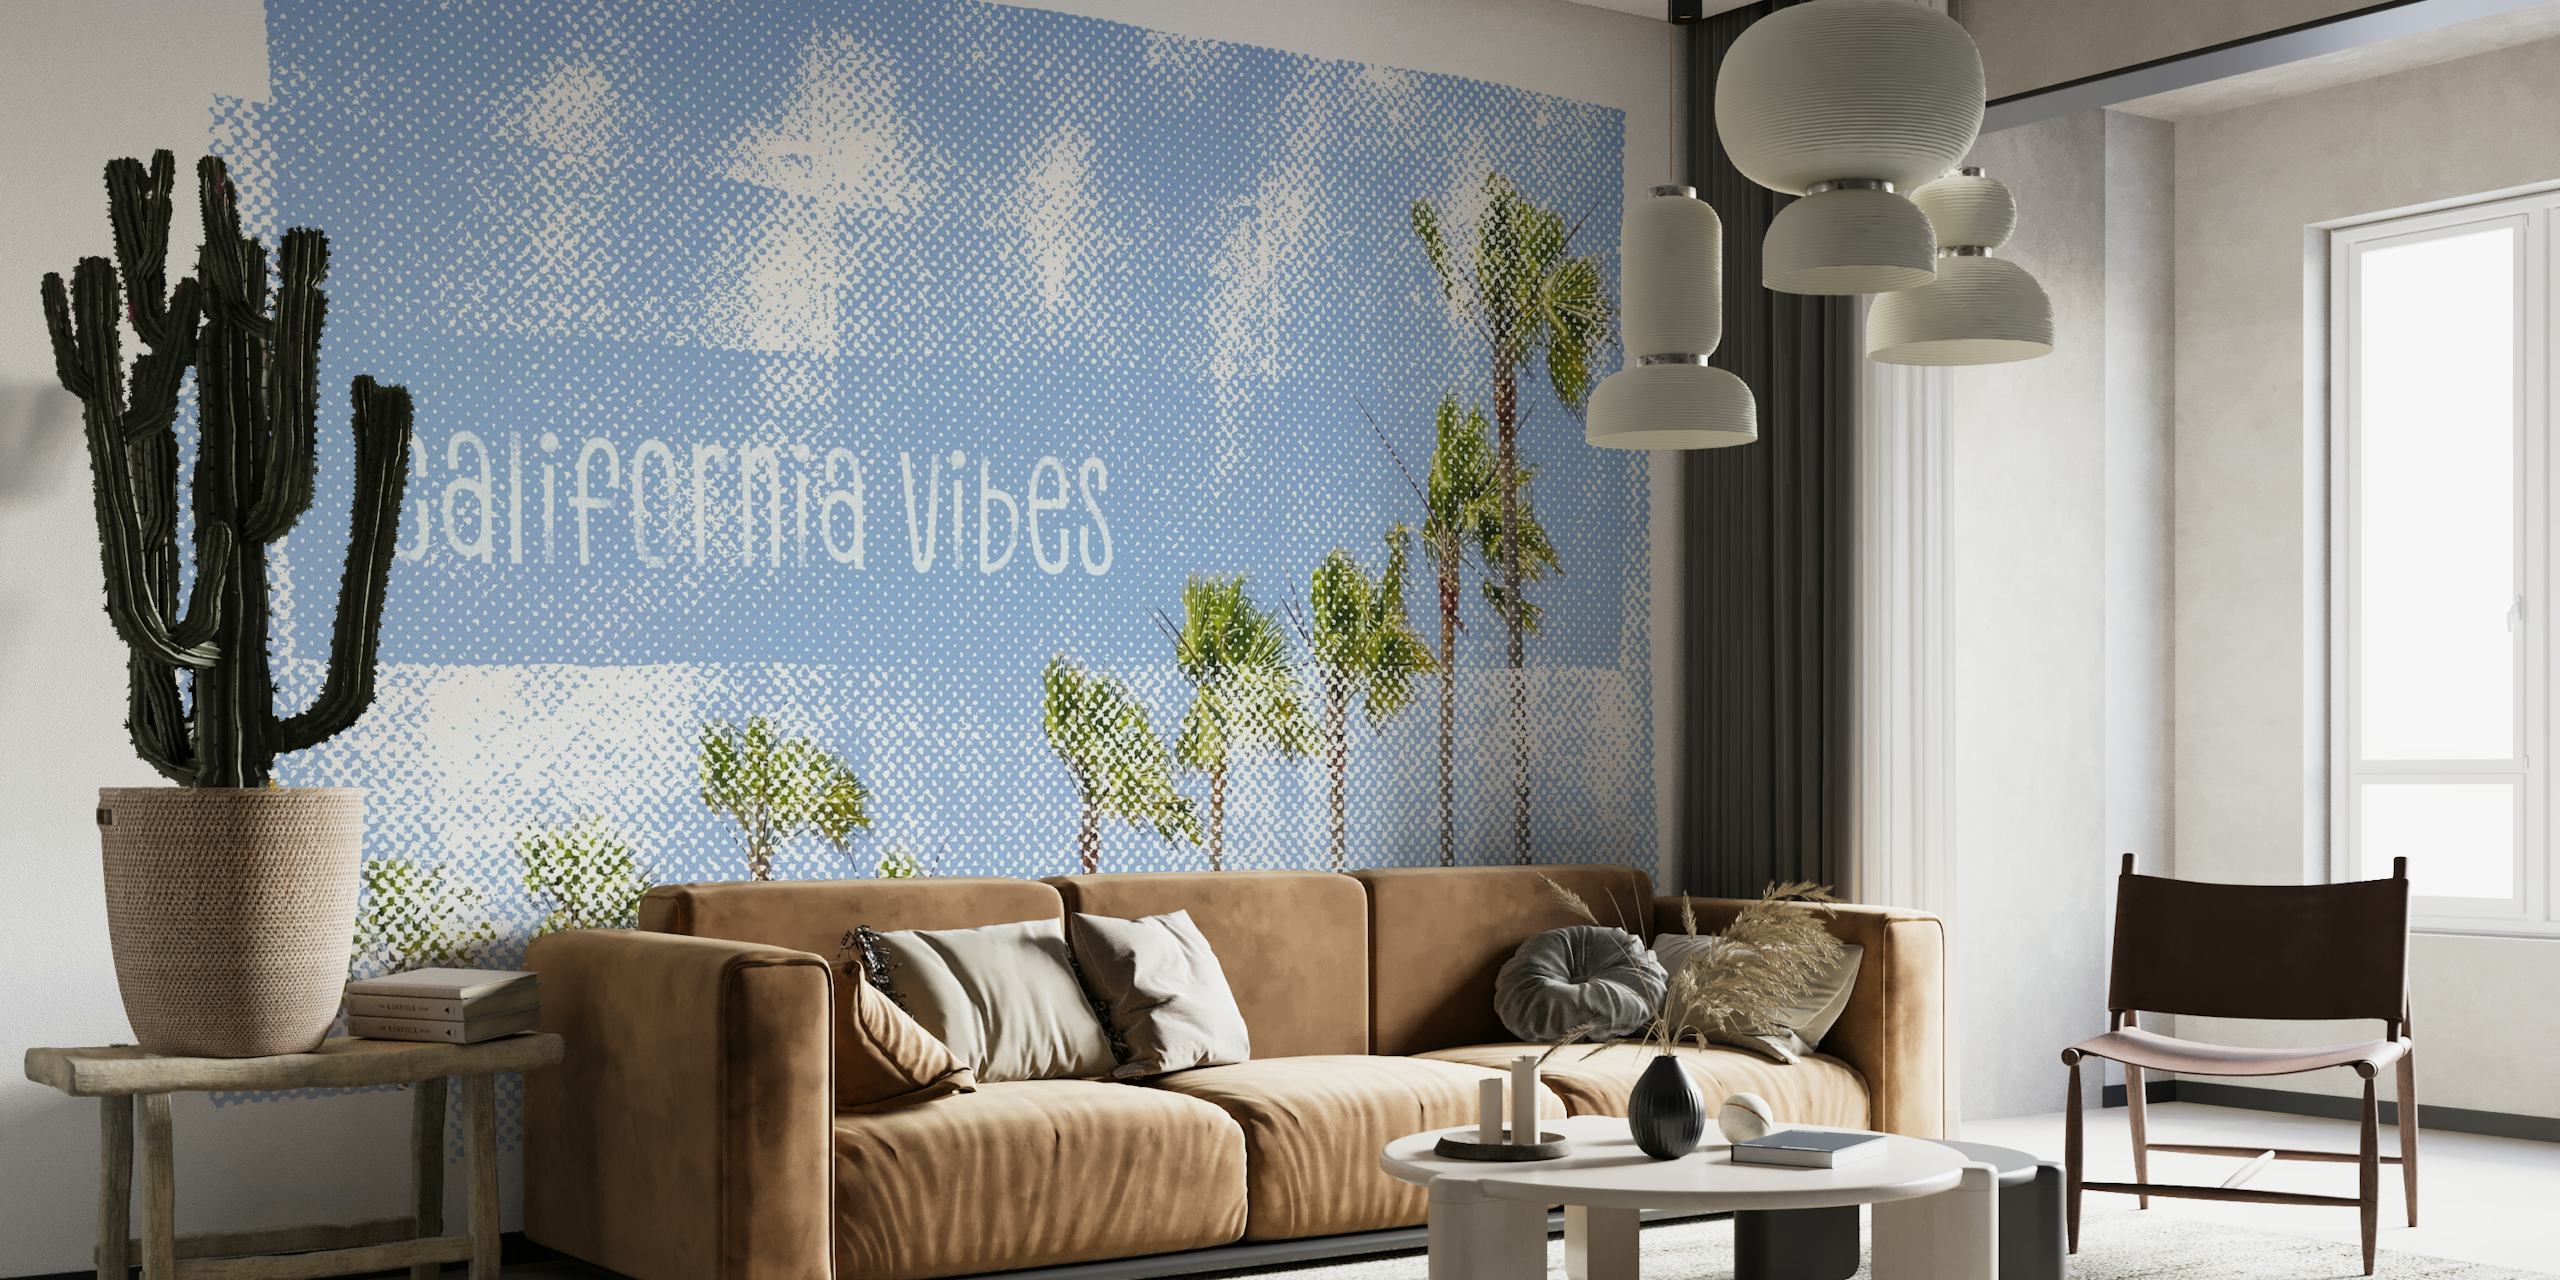 Umjetnička zidna slika s kalifornijskim palmama s apstraktno plavom teksturom